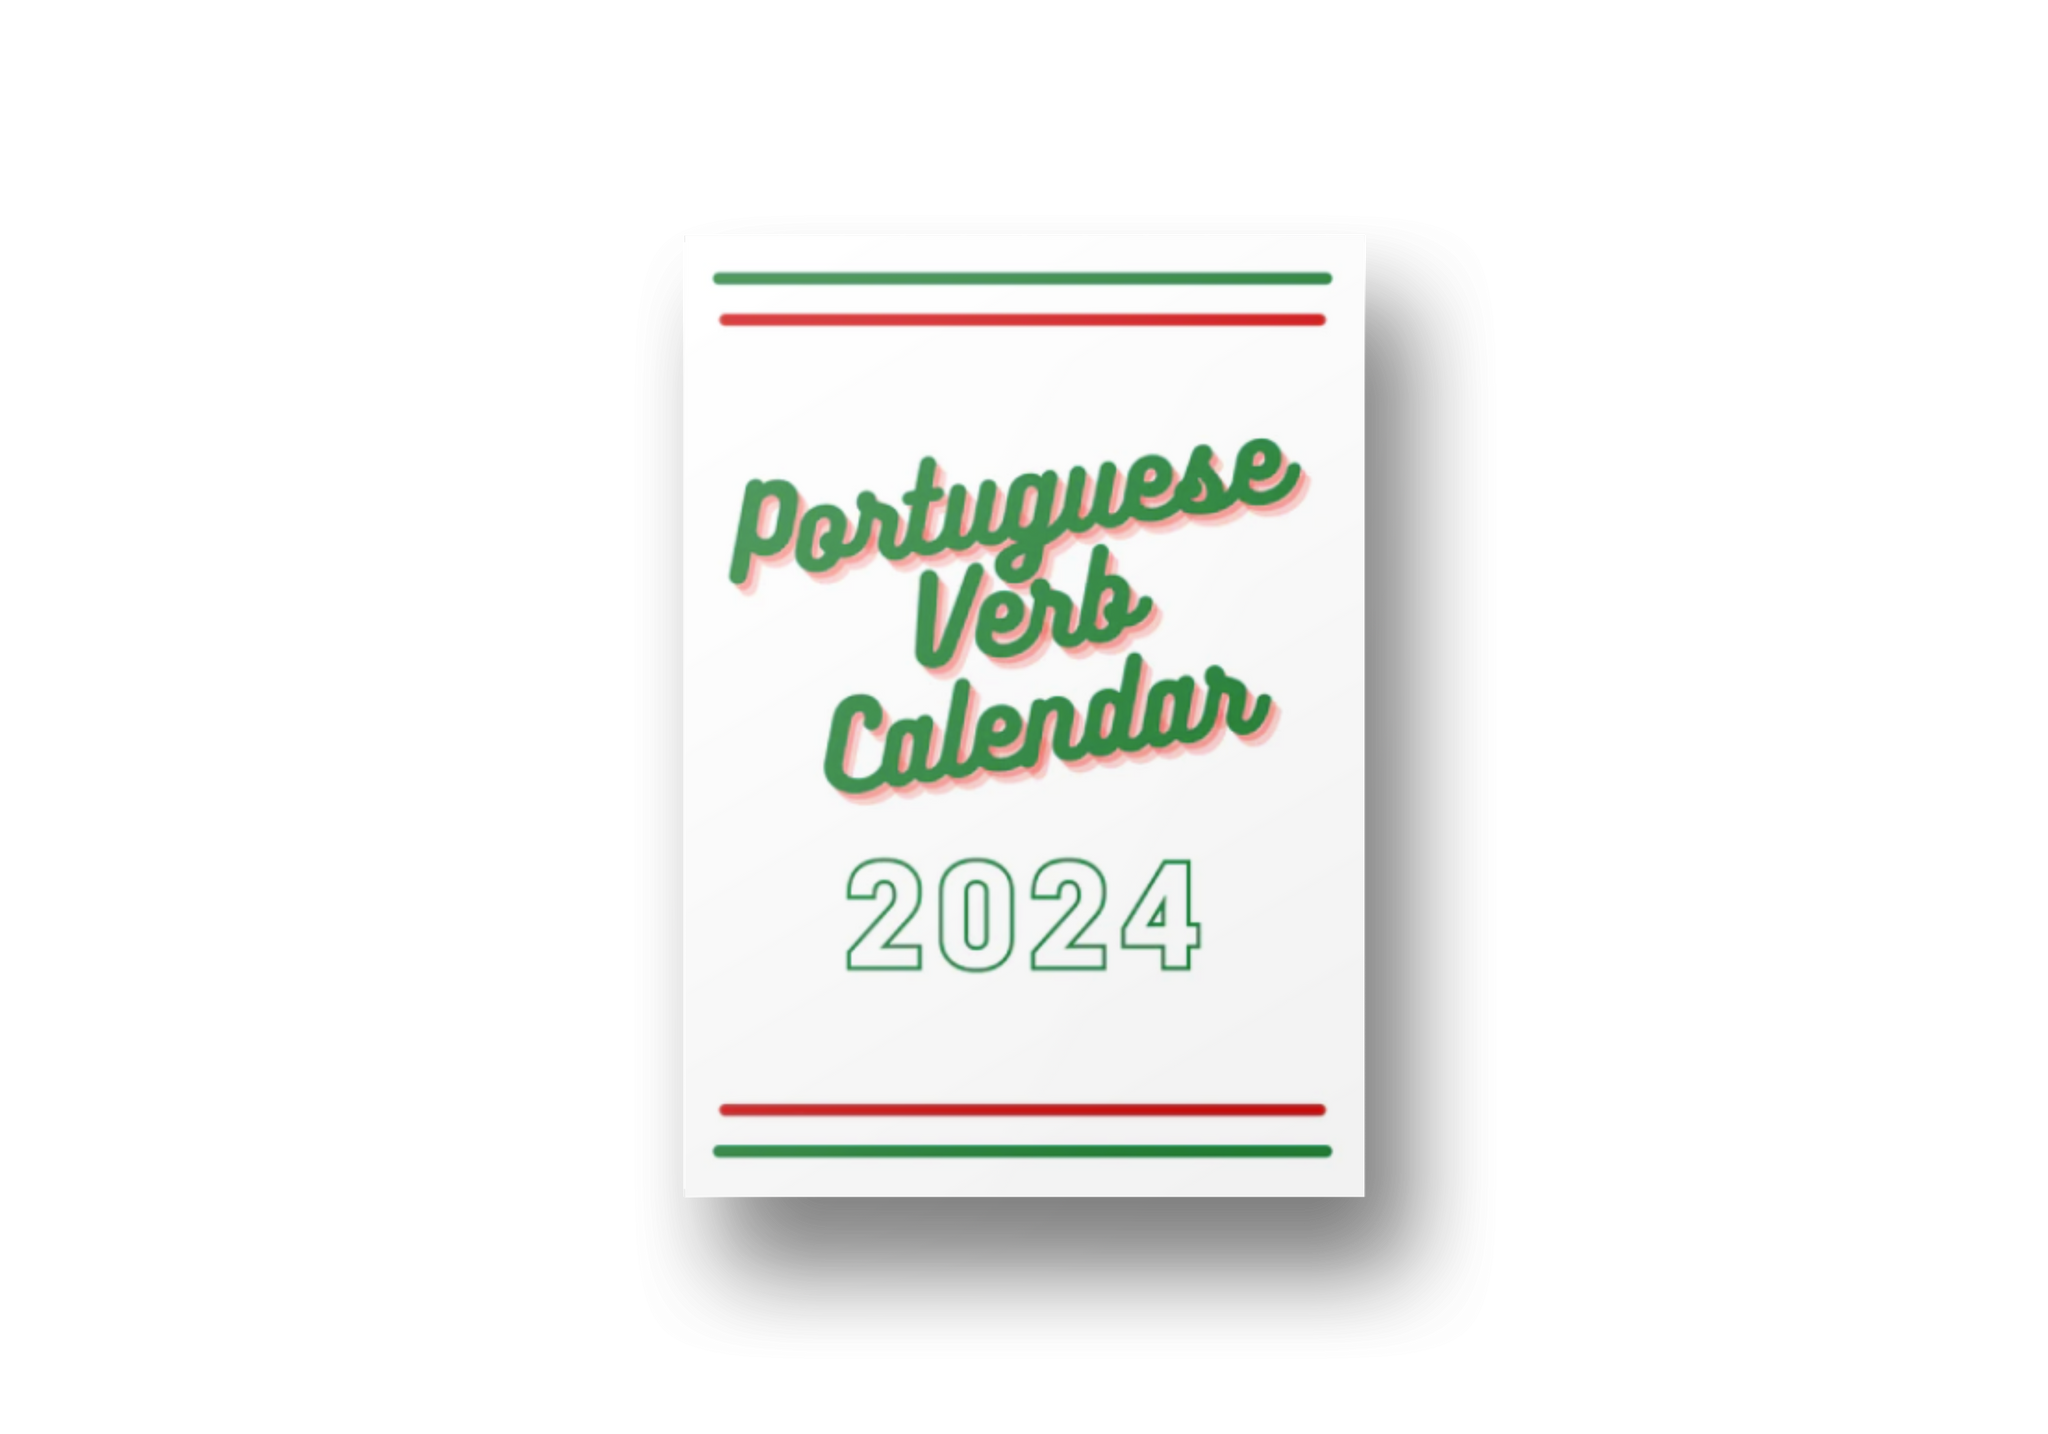 Portuguese Verb Calendar